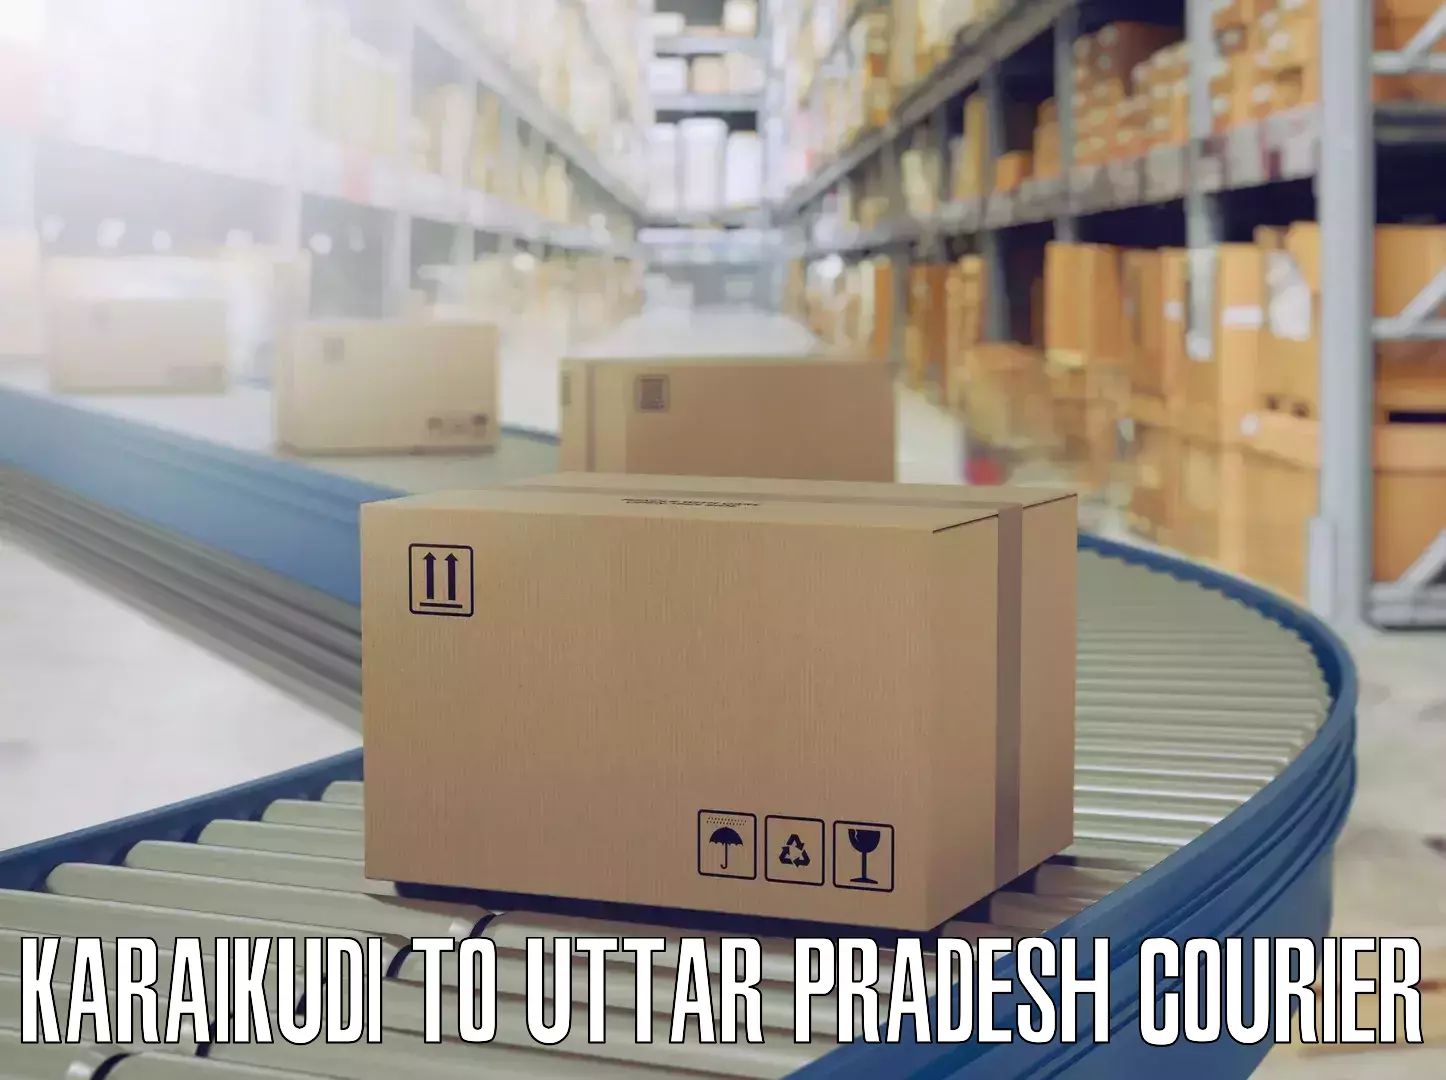 Reliable furniture transport Karaikudi to Uttar Pradesh